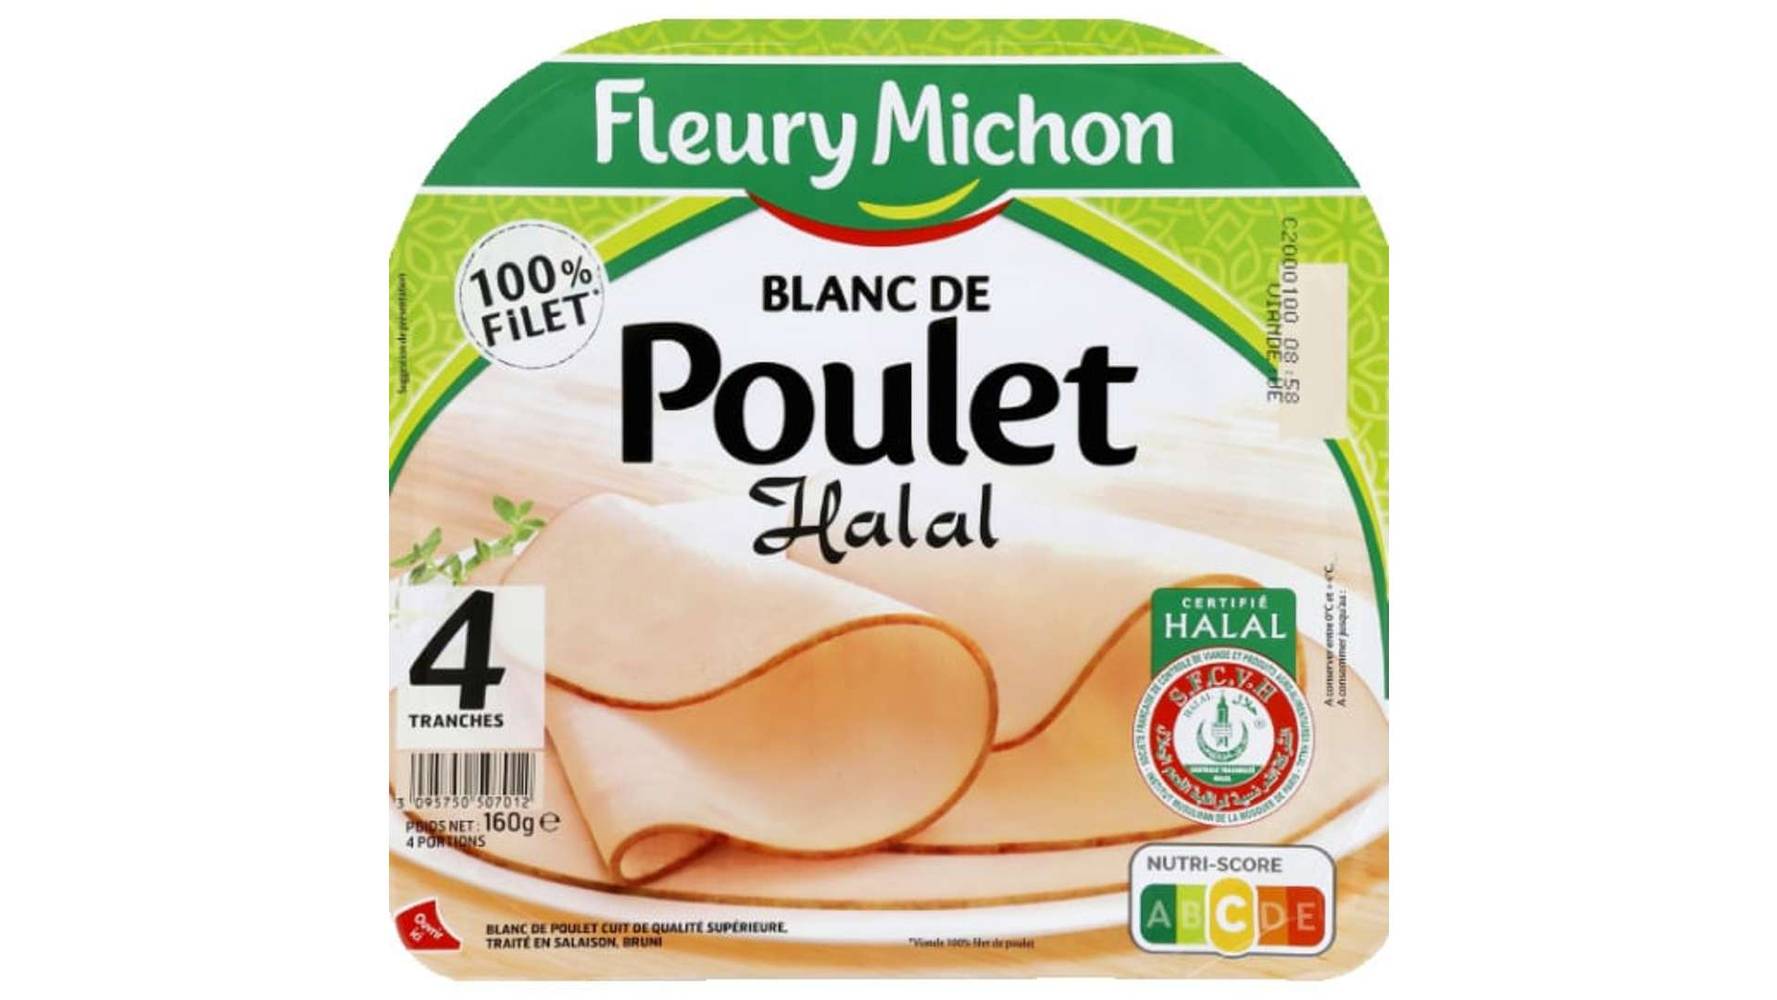 Fleury Michon - Blanc de poulet halal (4 pièces)